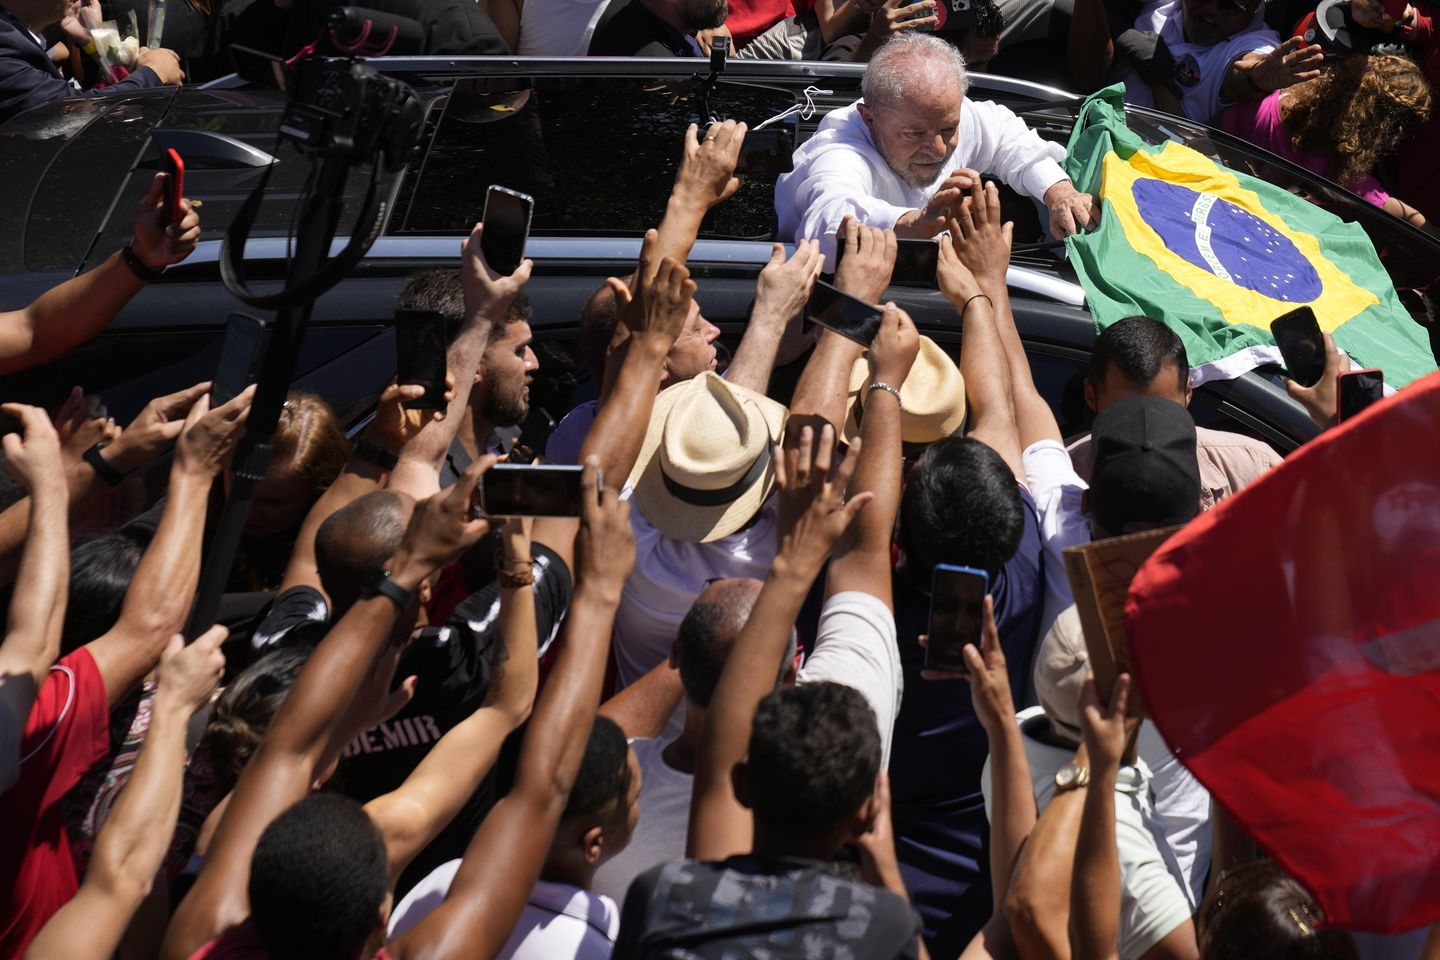 Luiz Inacio Lula da Silva Brezilya'da zaferini ilan ederken, 'tropiklerin Trump'ı Jair Bolsonaro sessiz kaldı